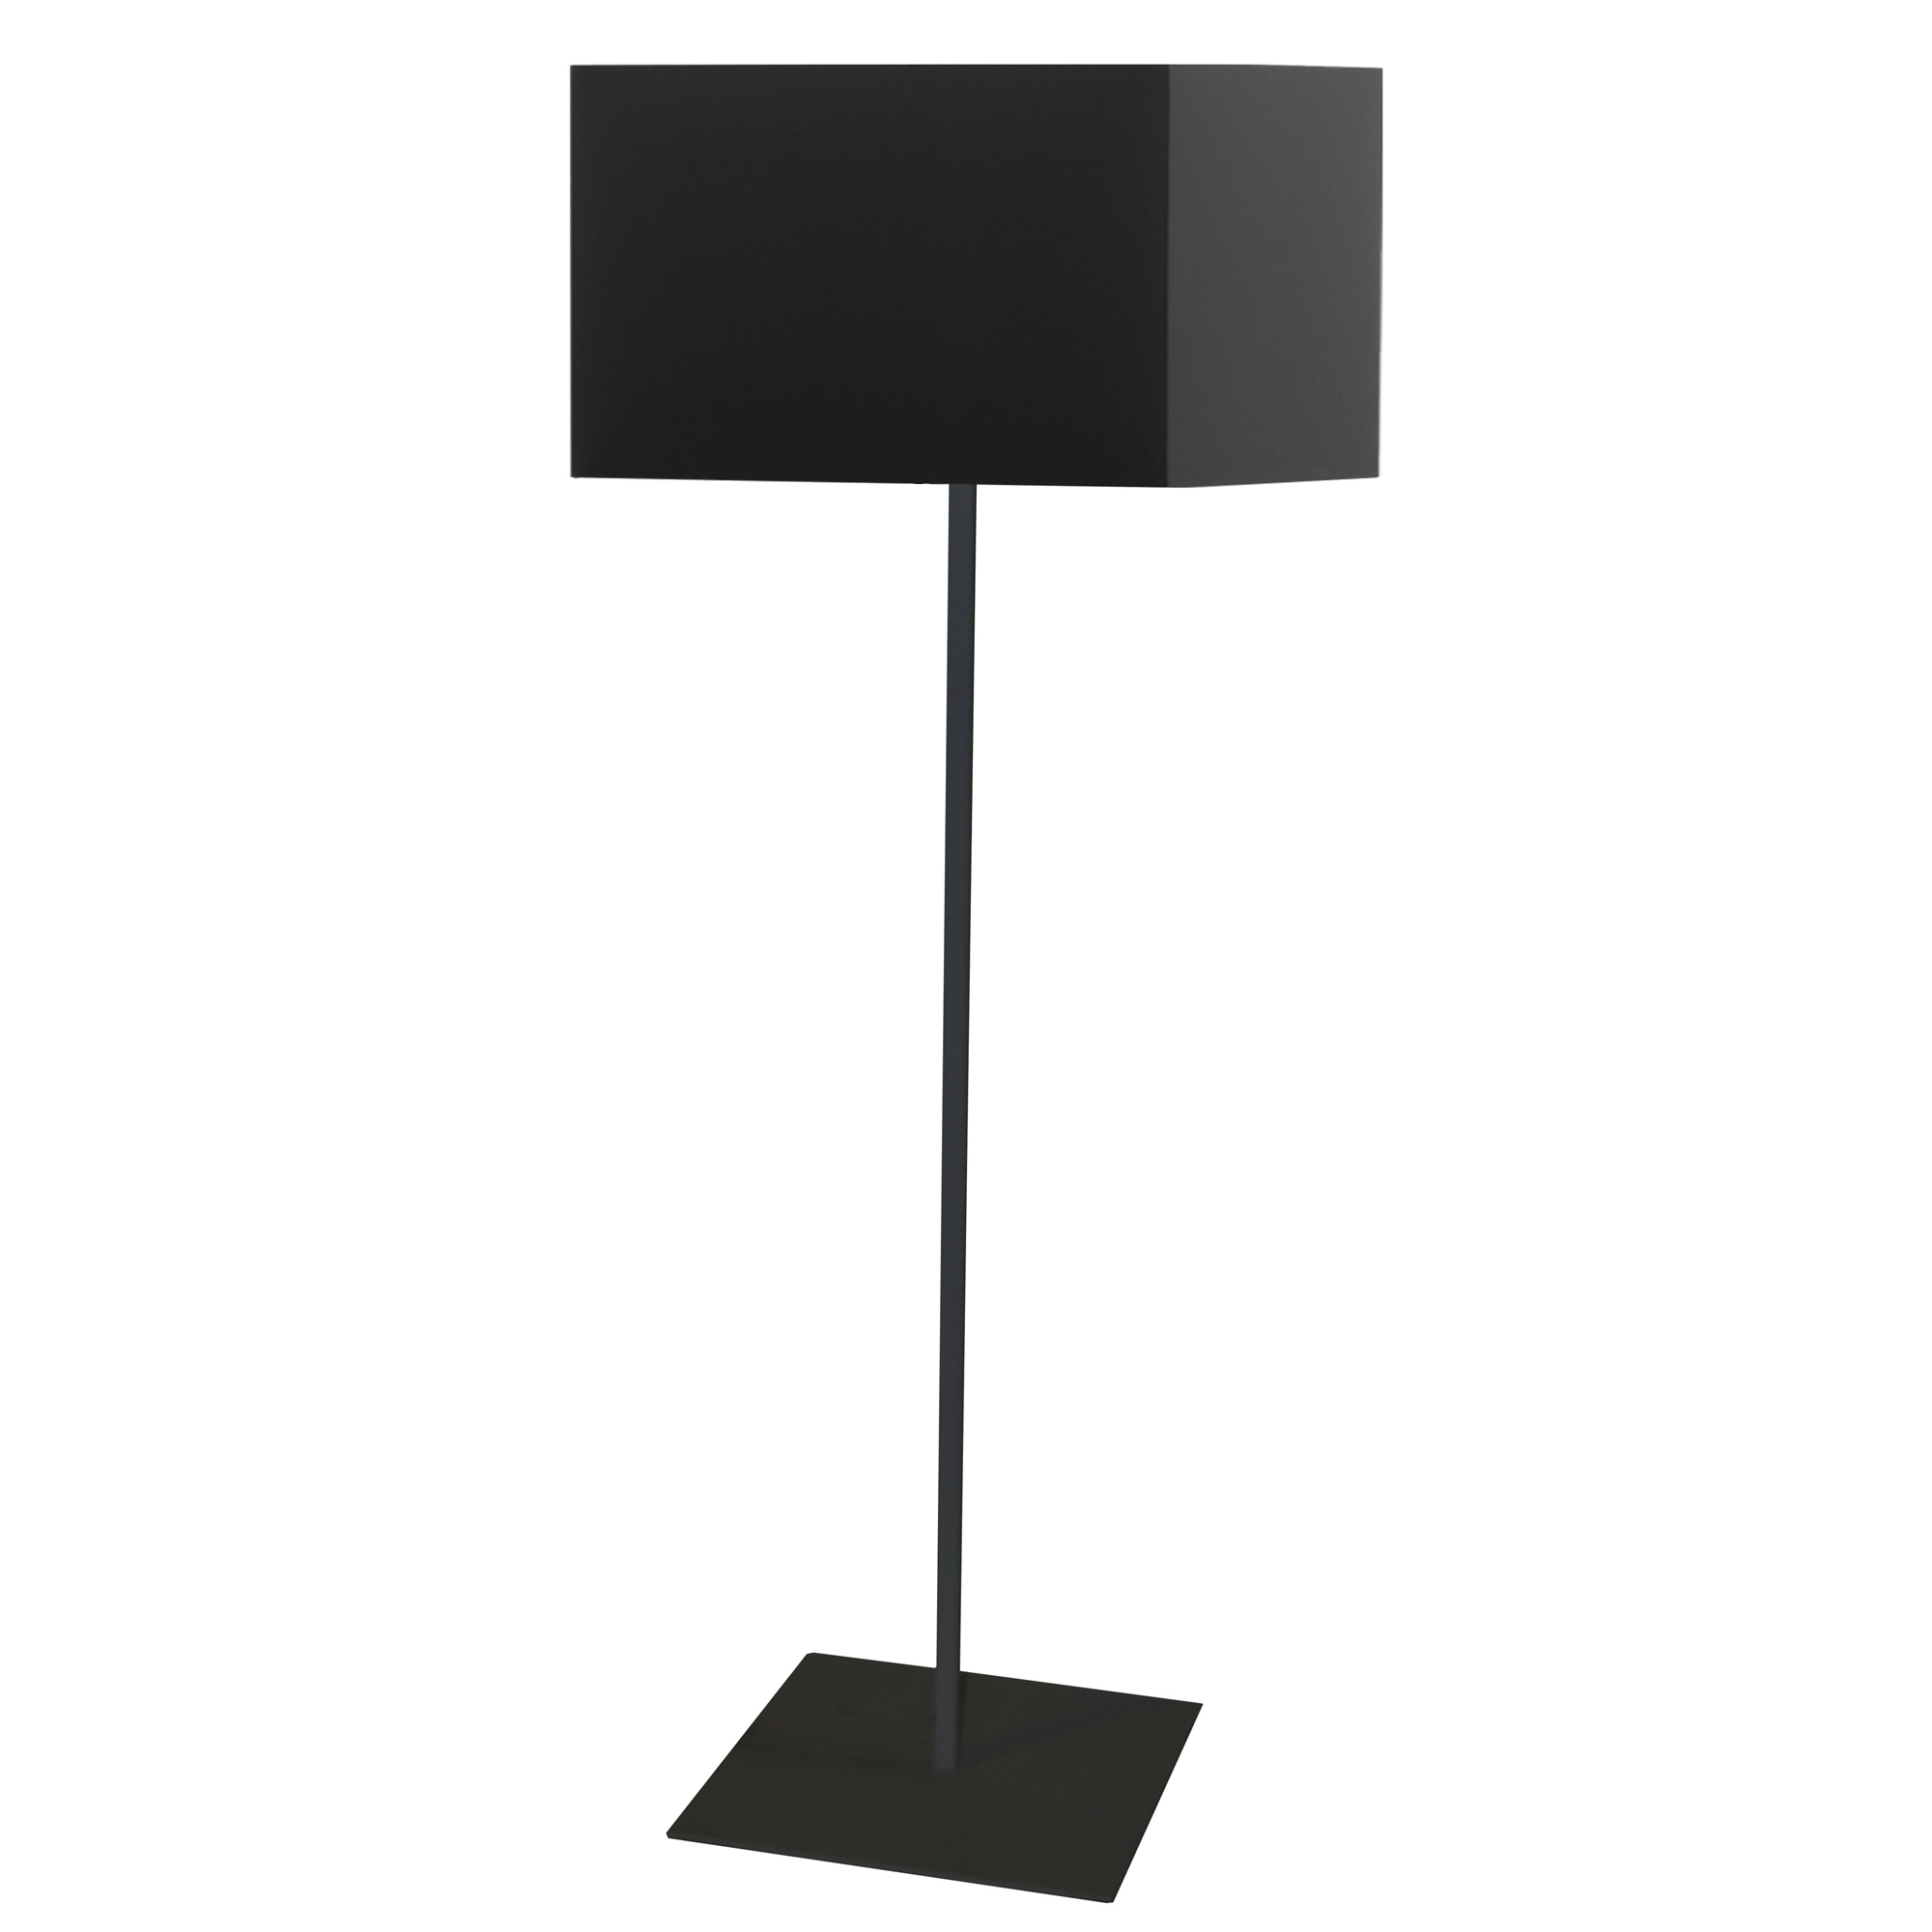 Square Floor Lamp By Dainolite Mm201f, Square Floor Lamp Shade